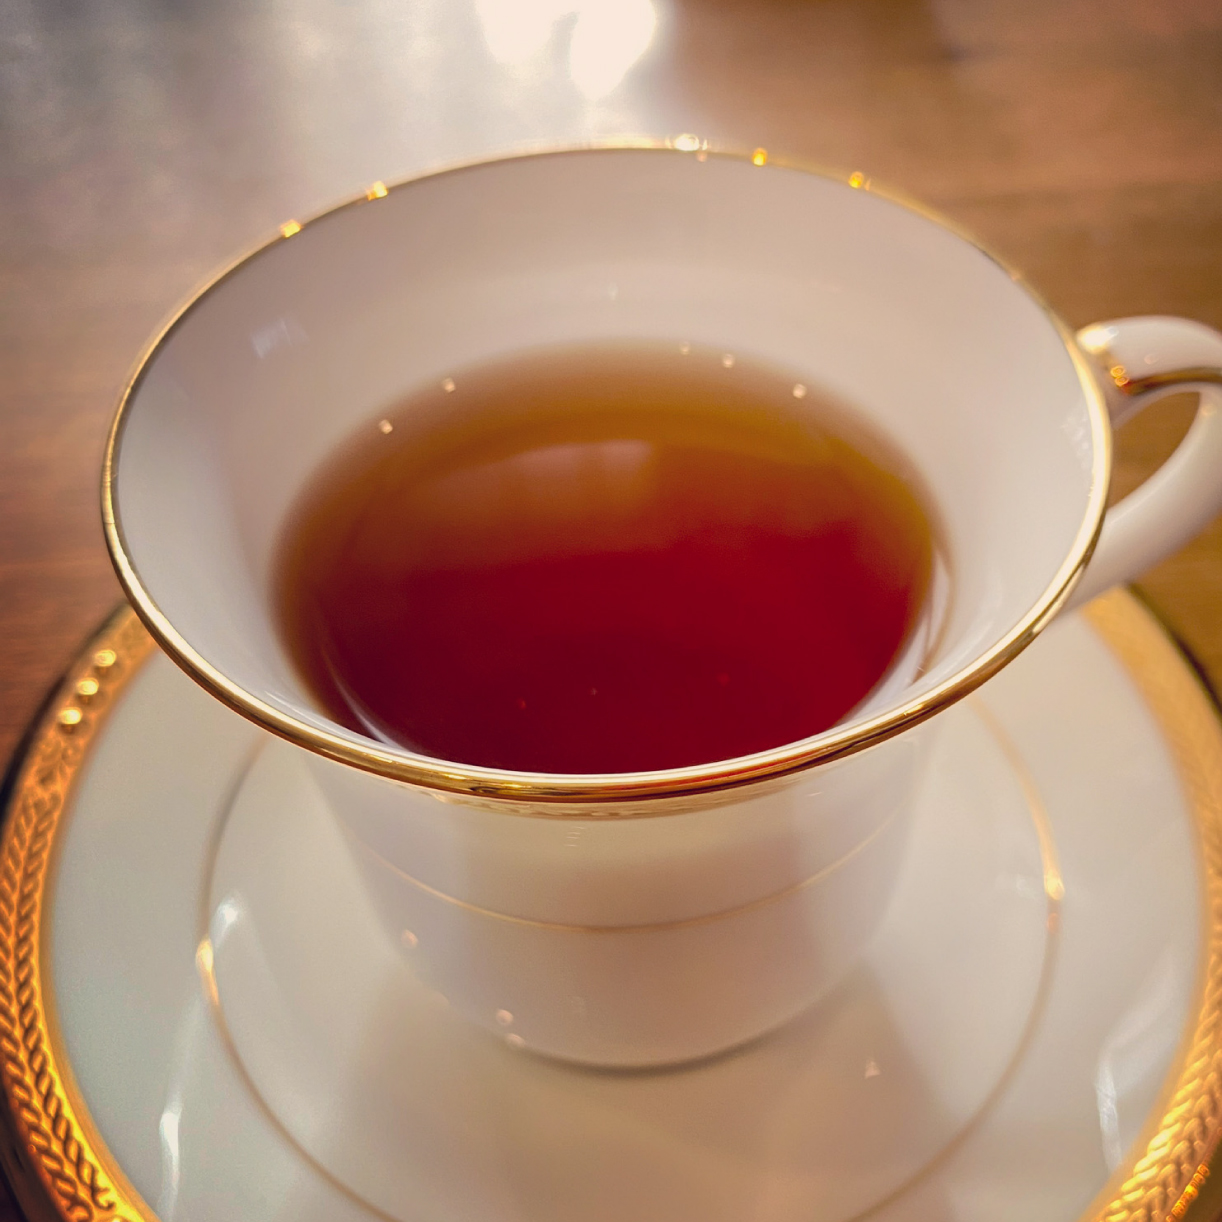 沼津紅茶 和紅茶 ティーバック 茶葉 5個入り 3袋 農家直送 お茶 紅茶 静岡 5000円